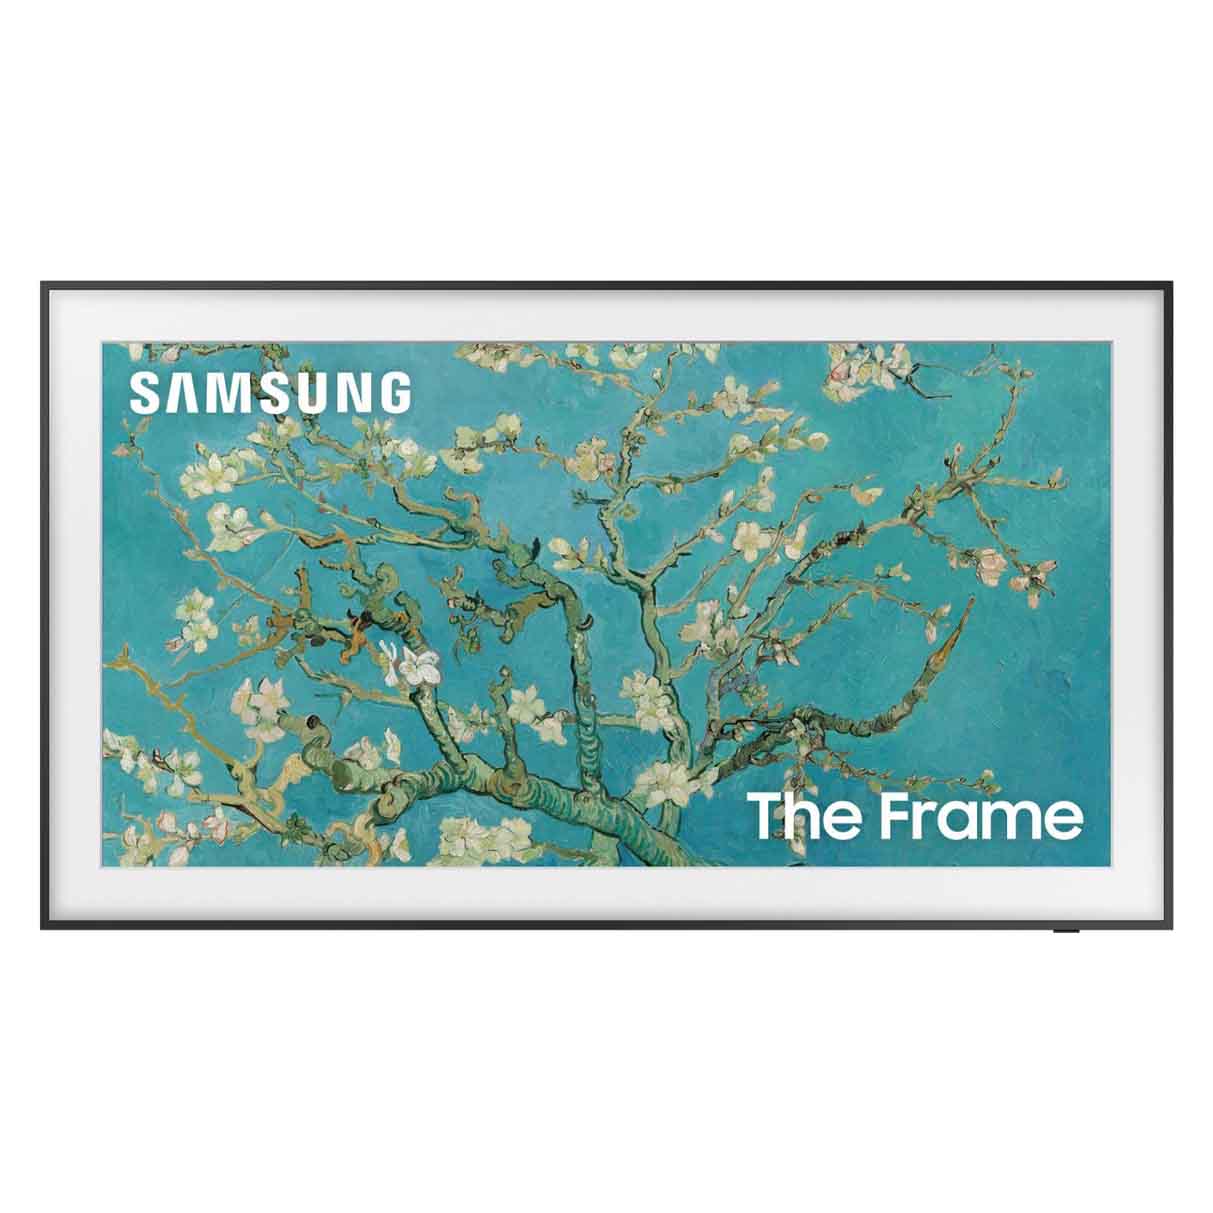 Samsung 65" Class The Frame QLED 4k Smart Tizen TV